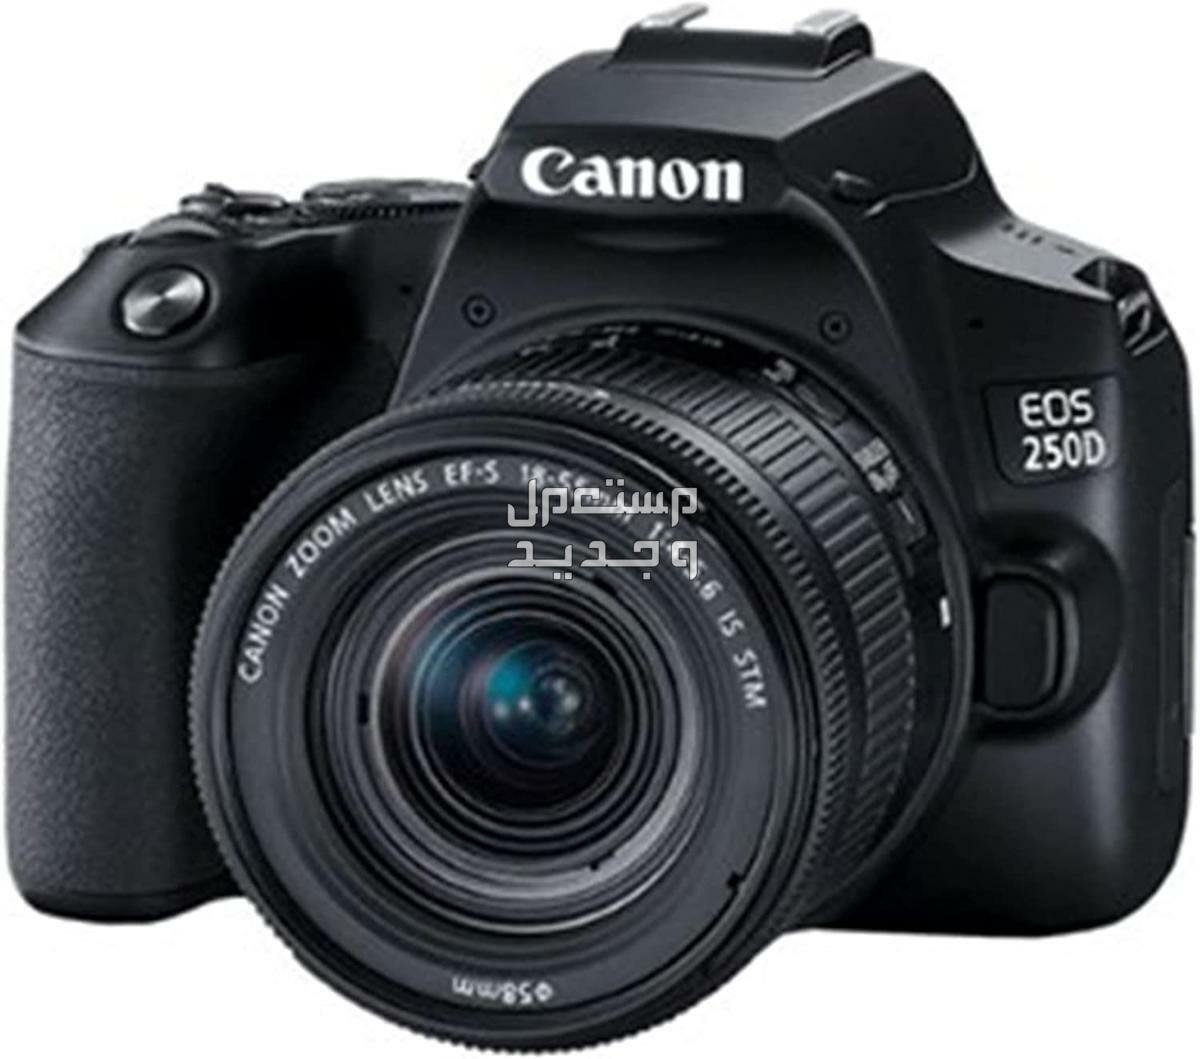 سعر ومميزات ومواصفات أرخص 5 كاميرات تصوير من كانون في لبنان كاميرا Canon EOS 250D